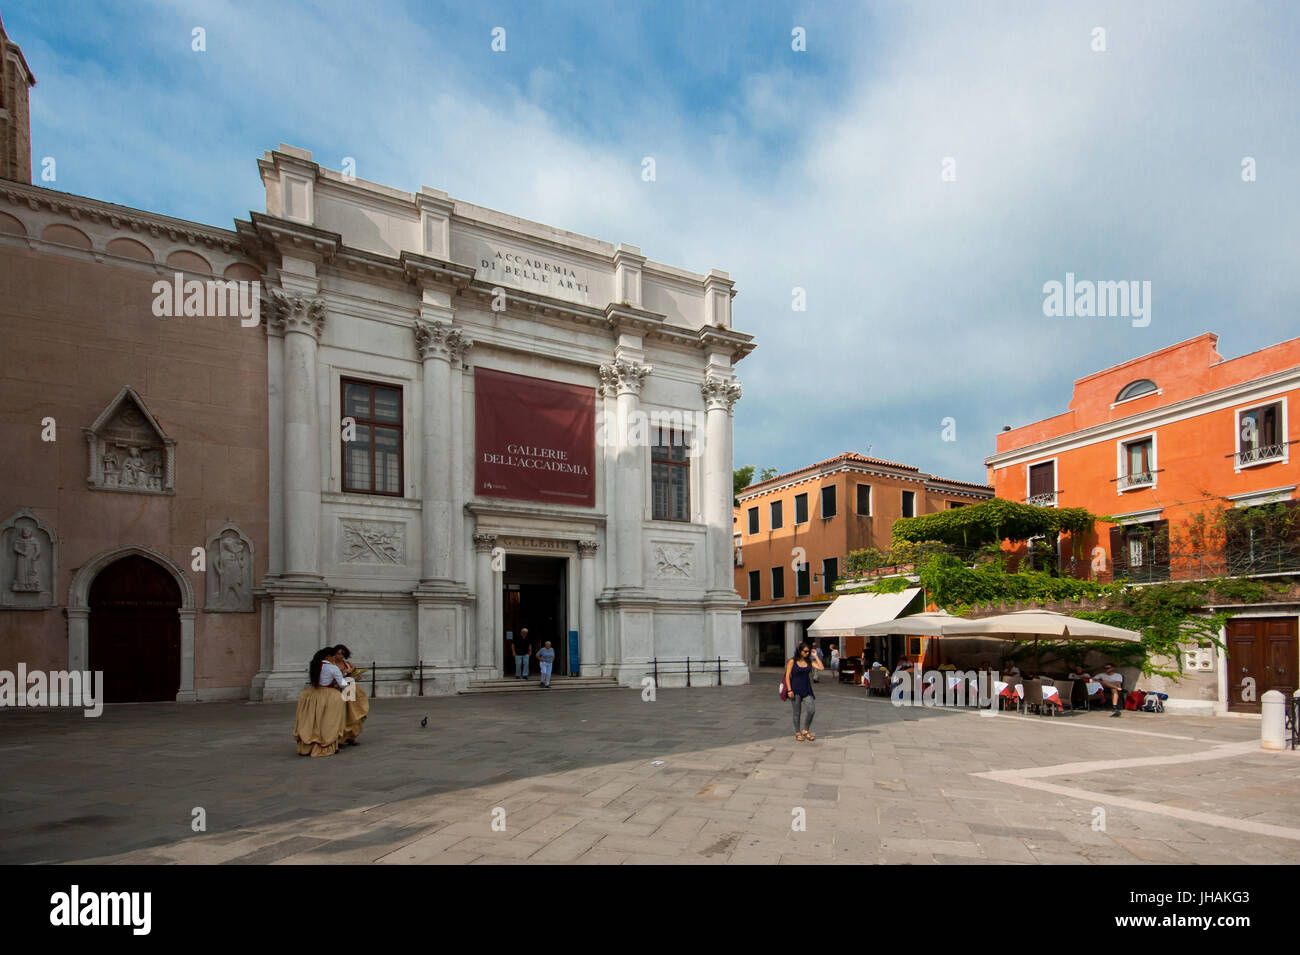 Venice - Main entrance of the Gallerie dell’Accademia art museum on the Campo della Carità square in the sestiere Dorsoduro area (architect: Palladio) Stock Photo